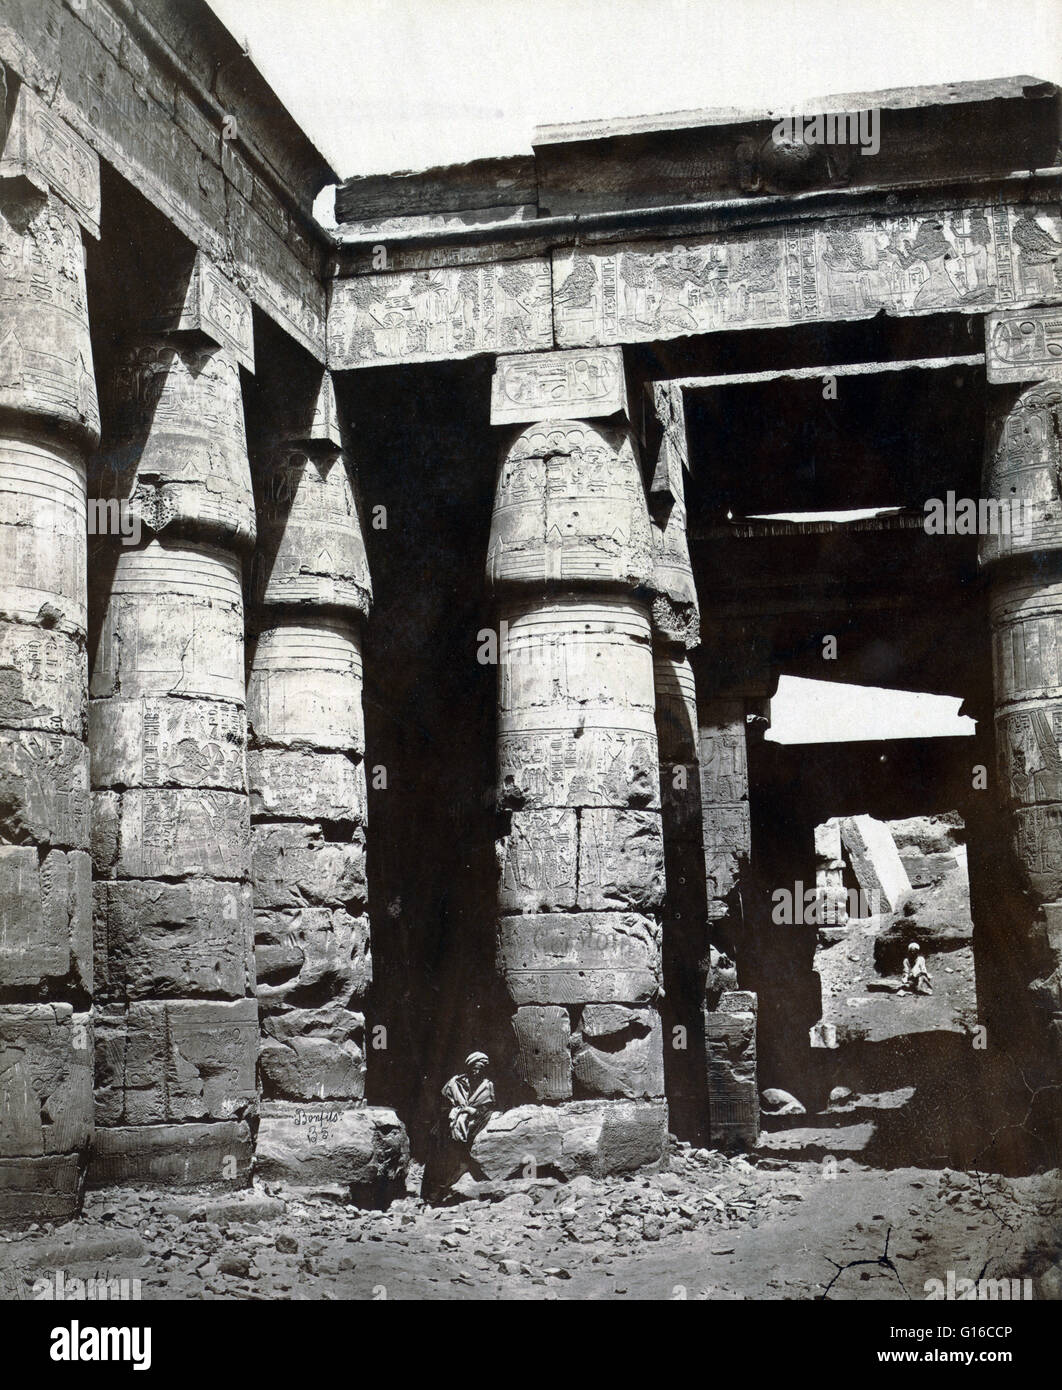 Innenraum der Tempel von Ramses IV in Theben, fotografiert von Maison Bonfils, ca. 1867-1885. Ramses IV. war der dritte Pharao der 20. Dynastie von dem neuen Reich des alten Ägypten. Zu Beginn seiner Herrschaft initiiert der Pharao eine wesentliche Stockfoto